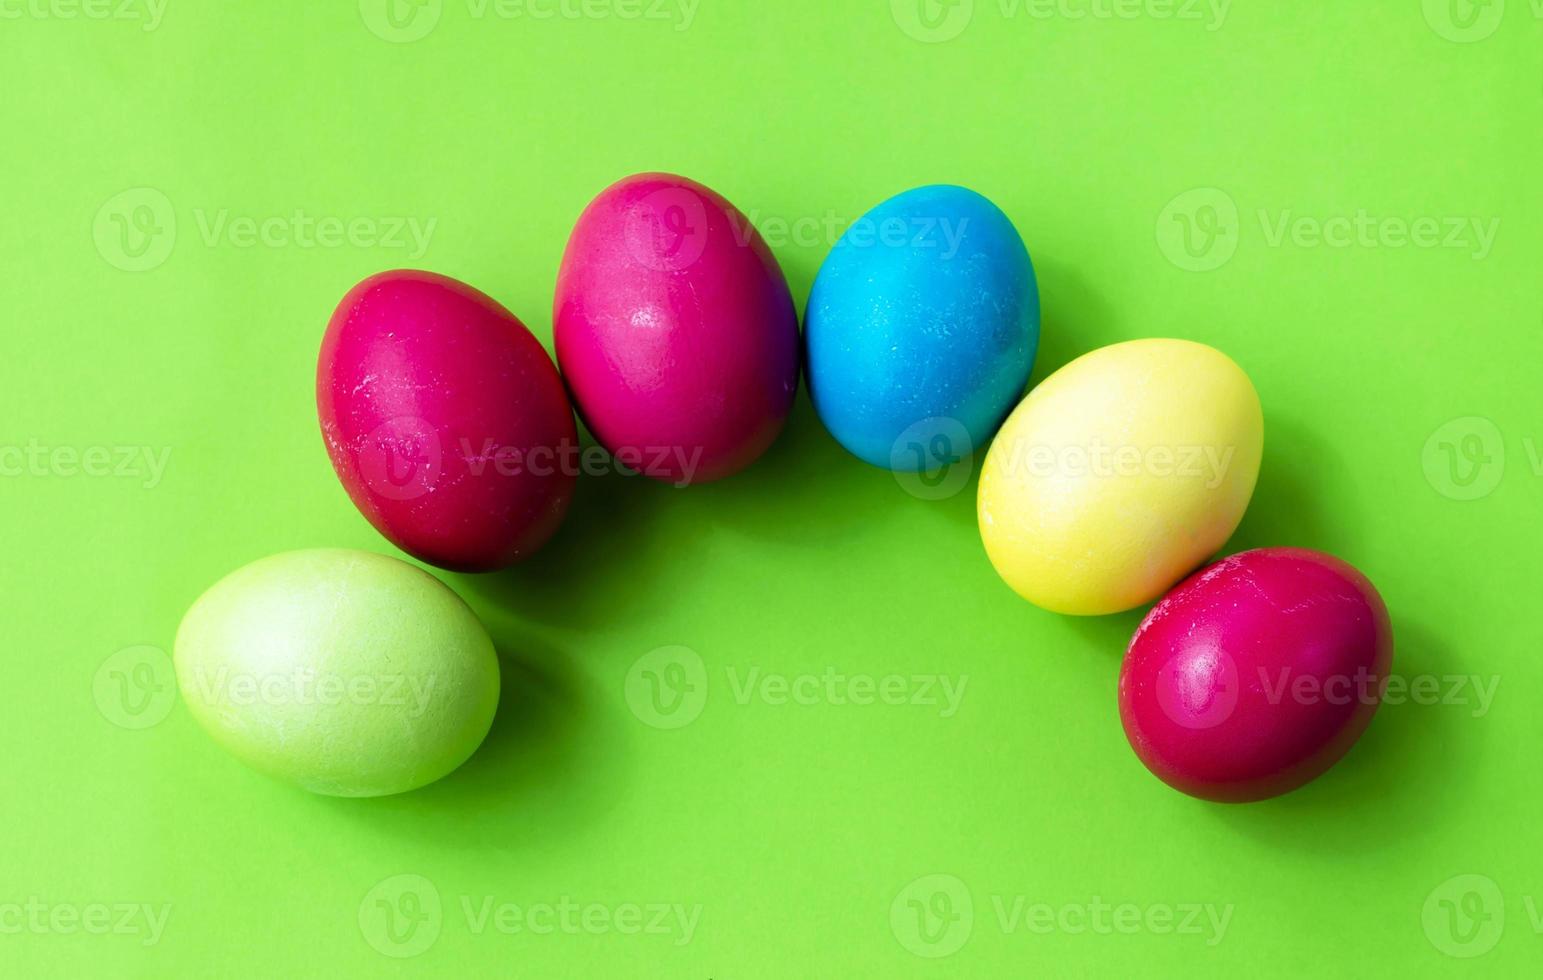 huevos de Pascua coloridos sobre un fondo verde. tarjeta postal. felicitaciones foto